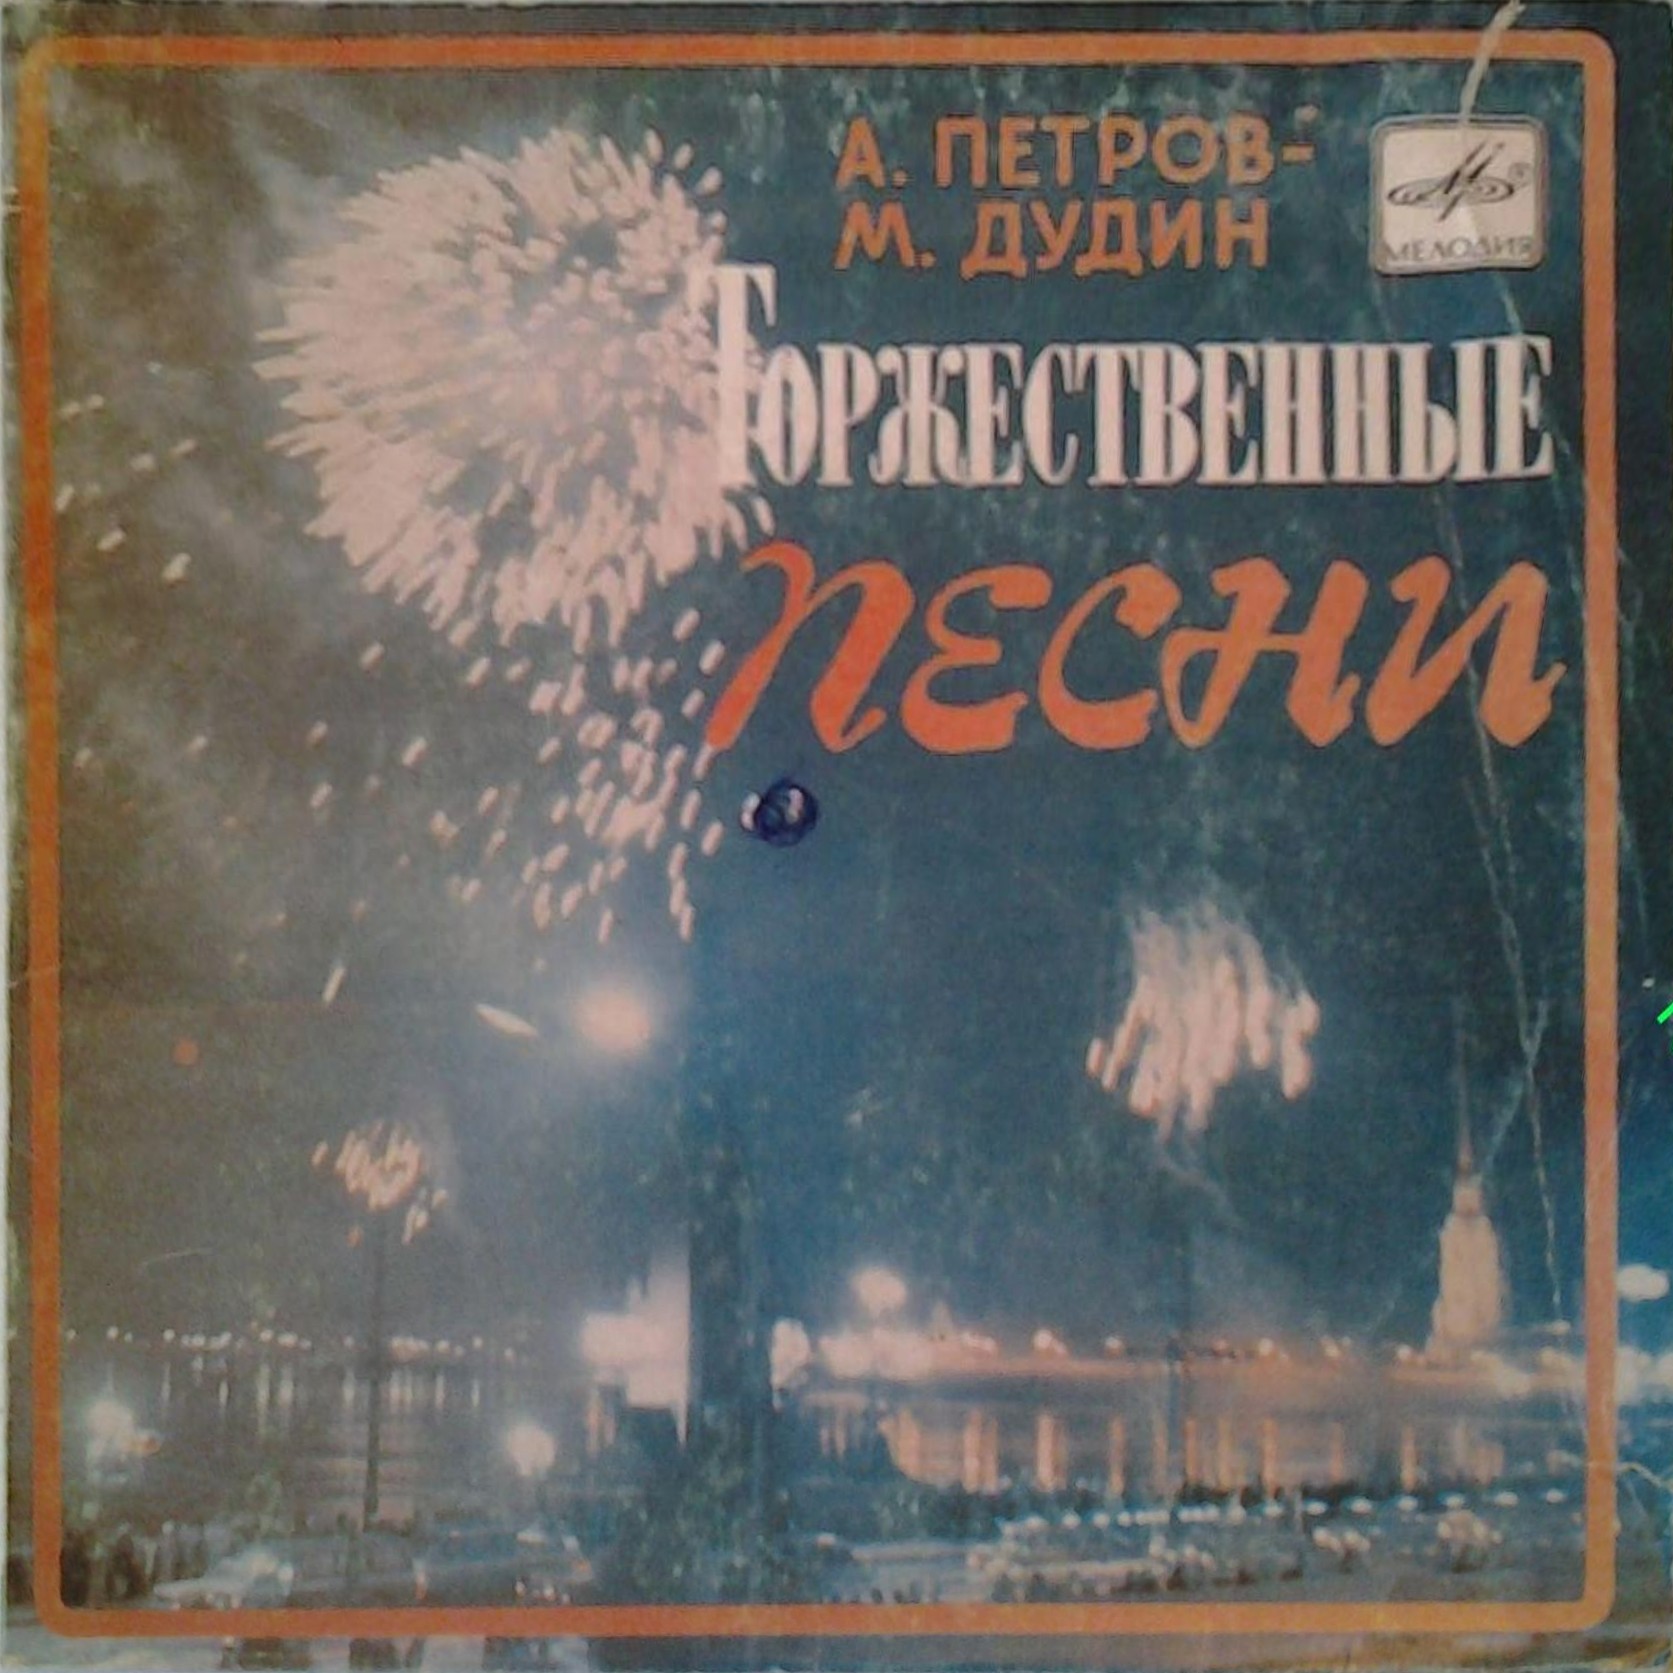 А. ПЕТРОВ (1930): Торжественные песни (сл. М. Дудина).